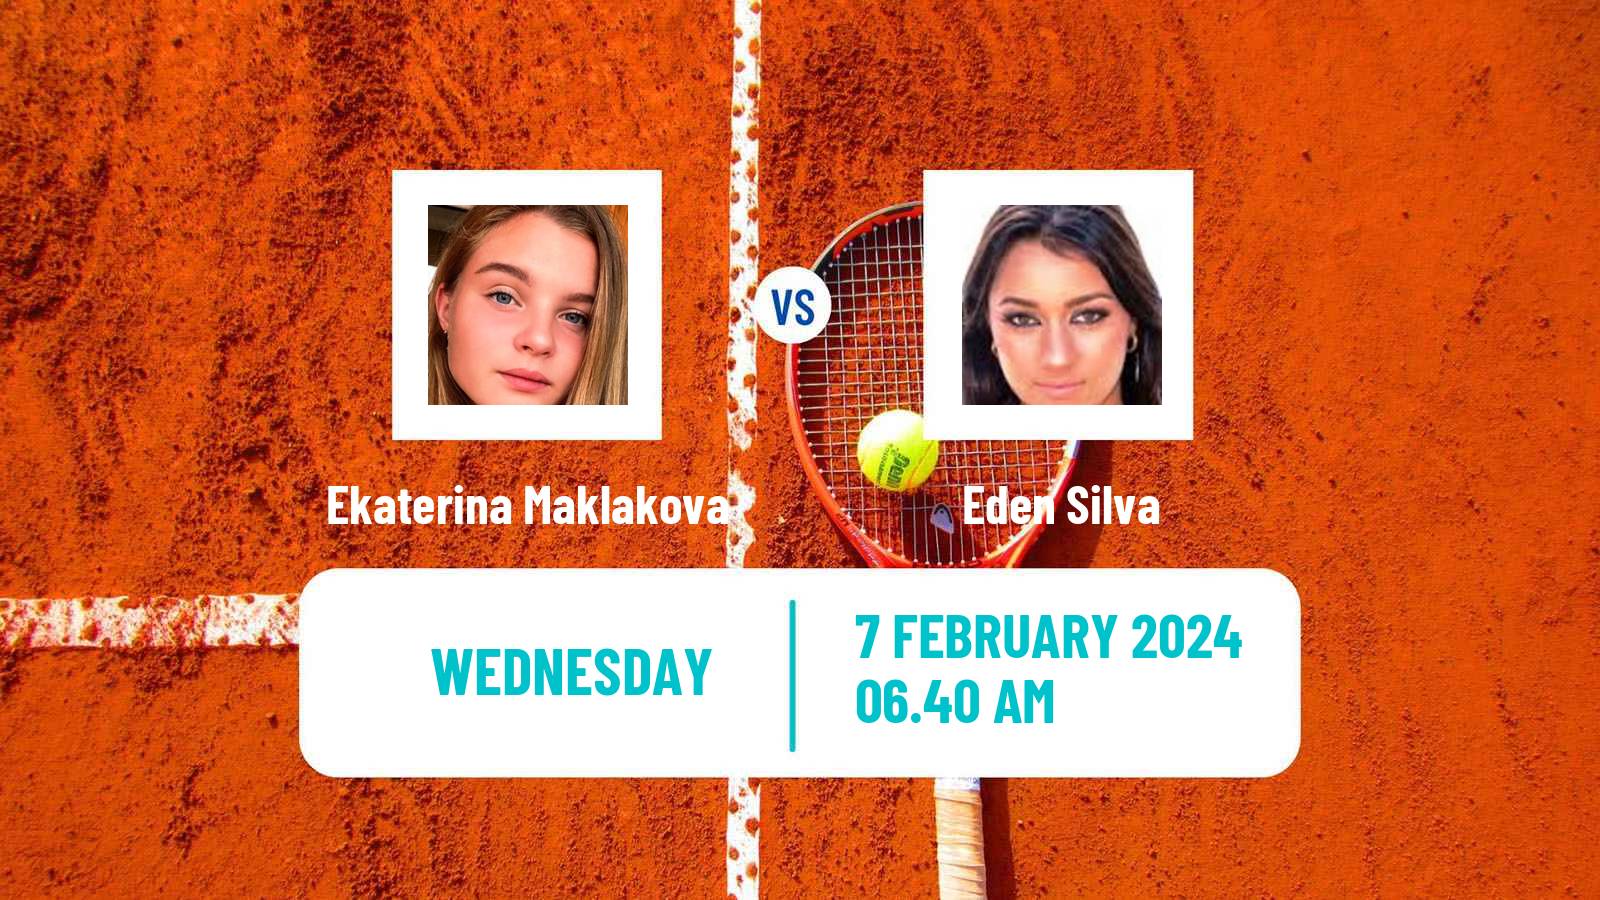 Tennis ITF W75 Grenoble Women Ekaterina Maklakova - Eden Silva